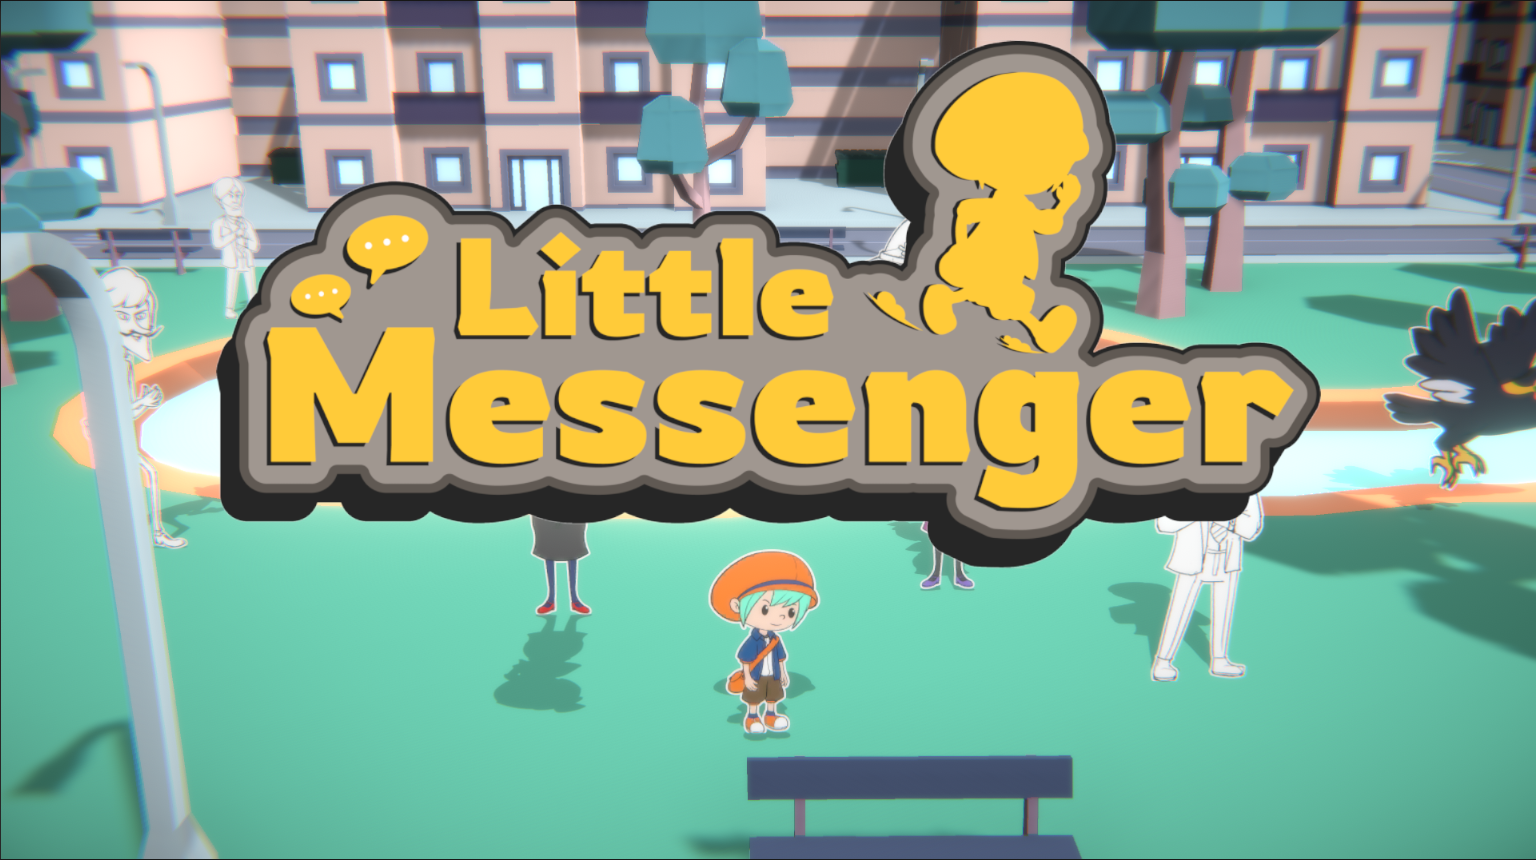 Little Messenger